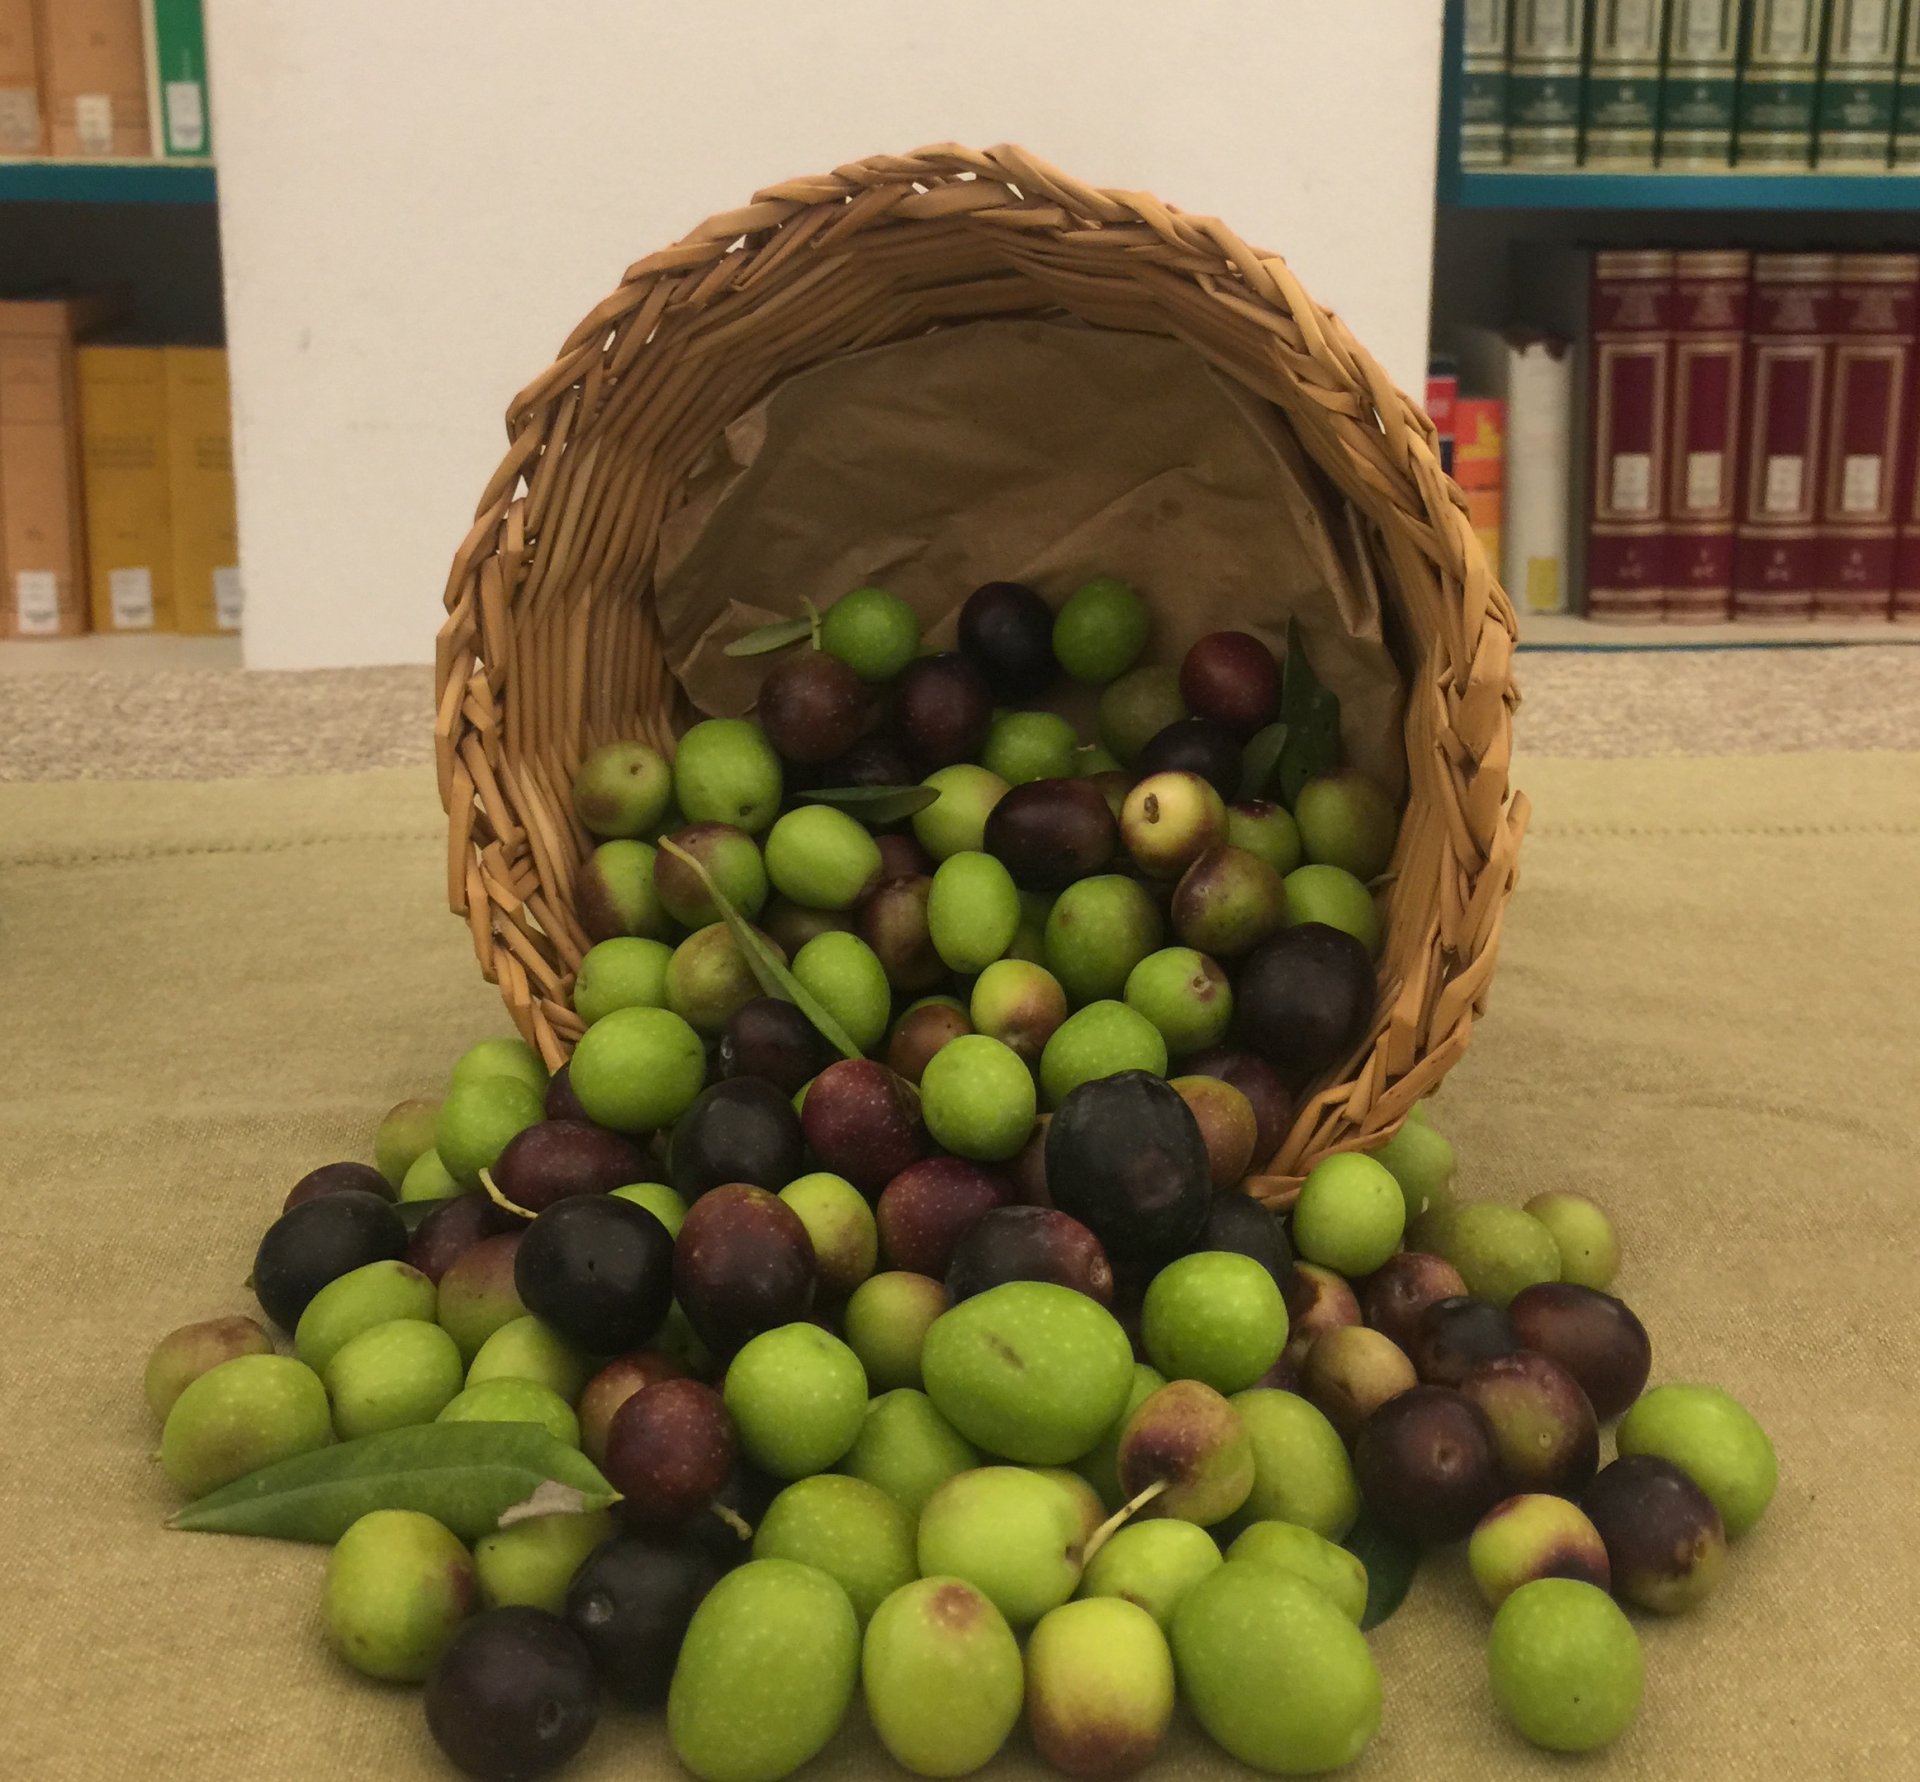 Un sistema di campionamento olive per giungere a una remunerazione equa degli olivicoltori